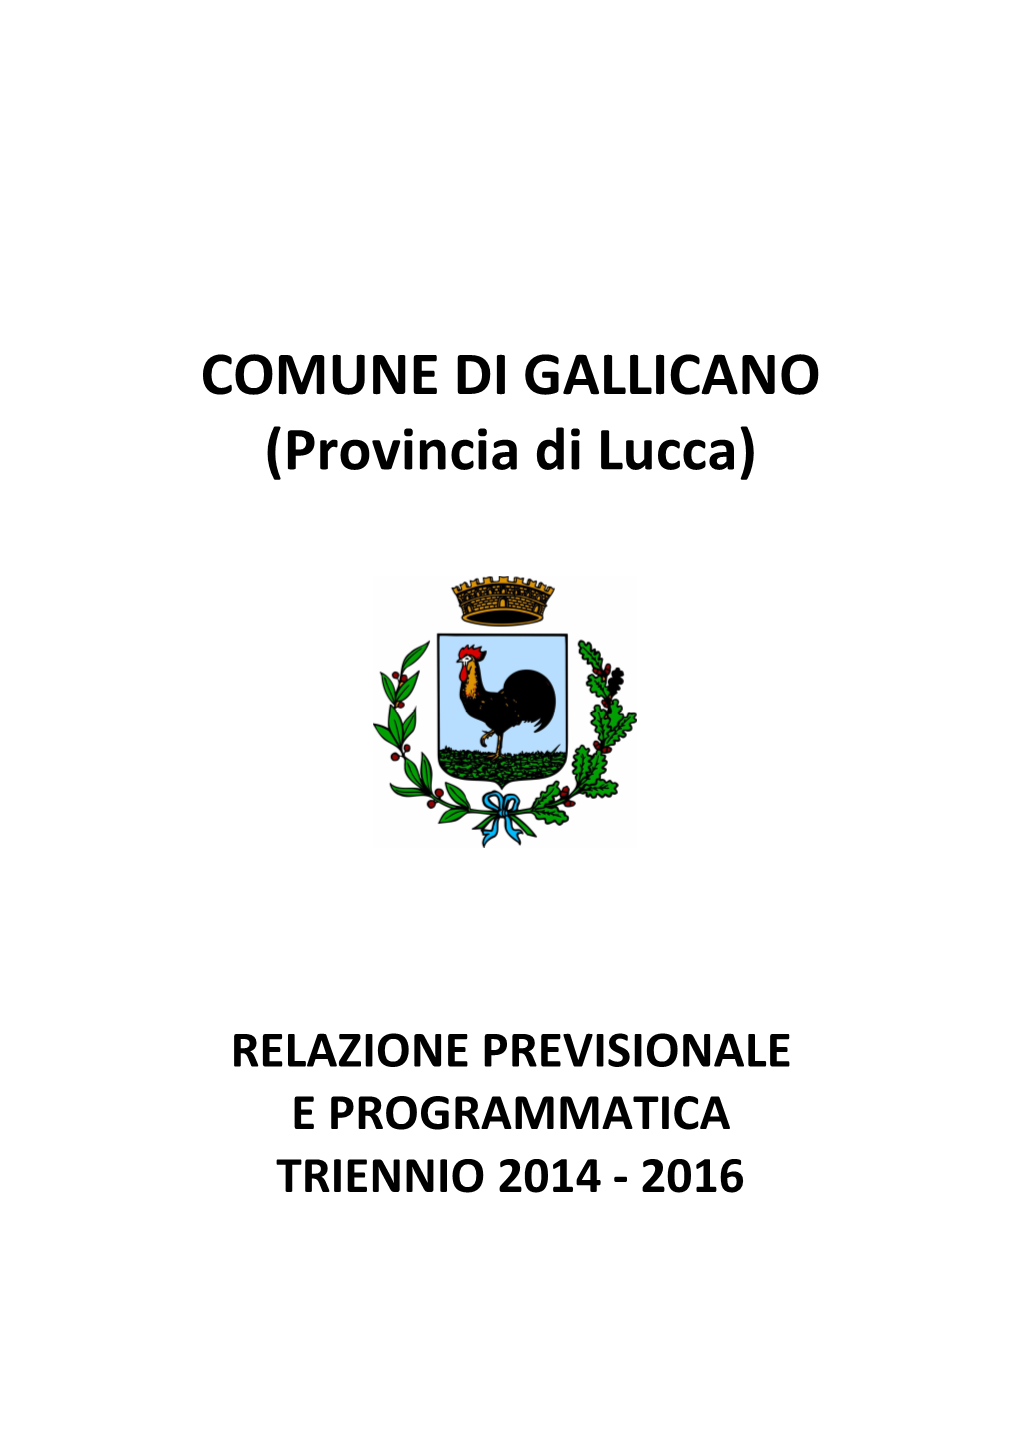 COMUNE DI GALLICANO (Provincia Di Lucca)